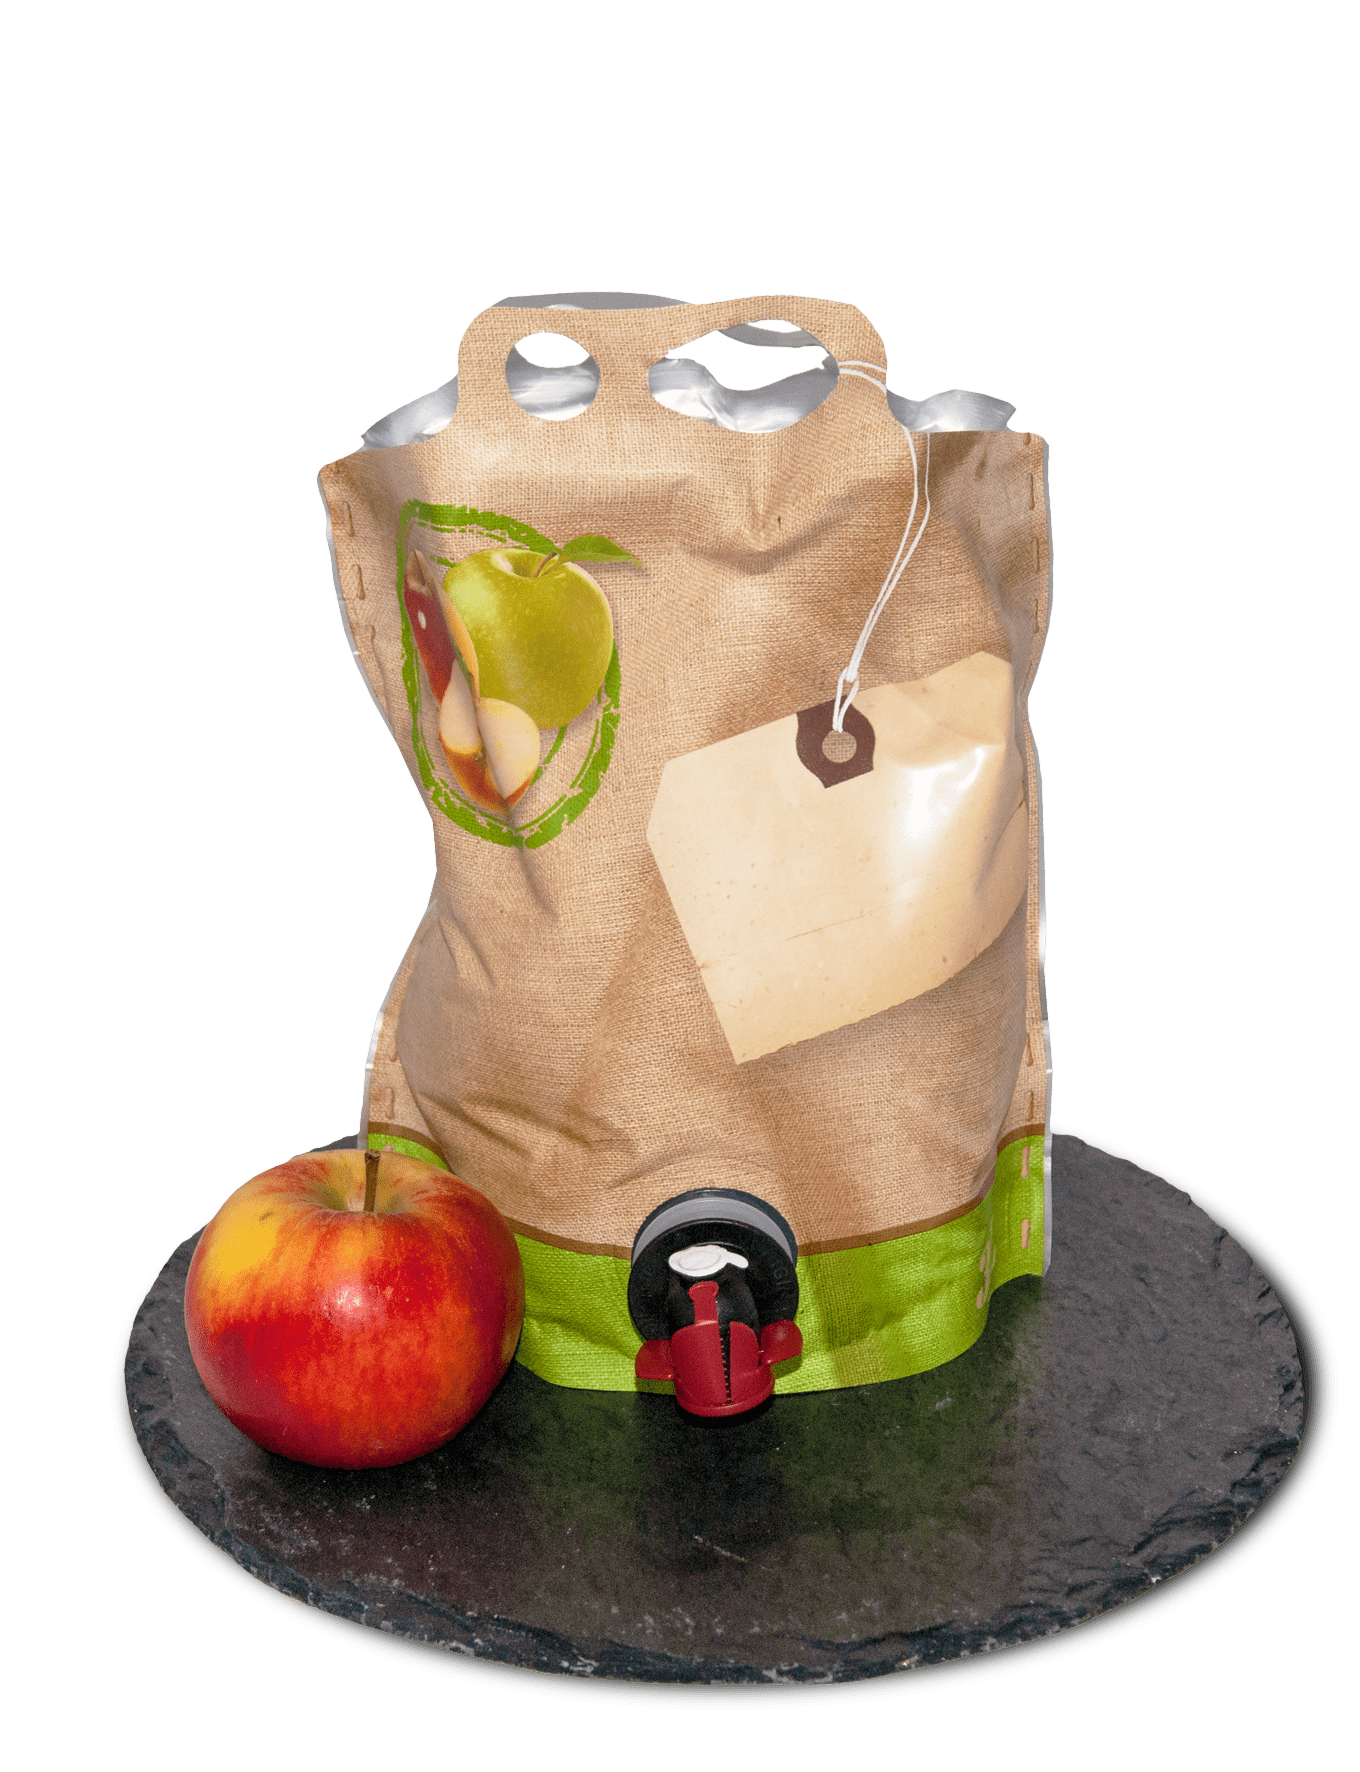 Apfel-Birnen-Saft | Landfactur | Knackwurstprofi Onlineshop